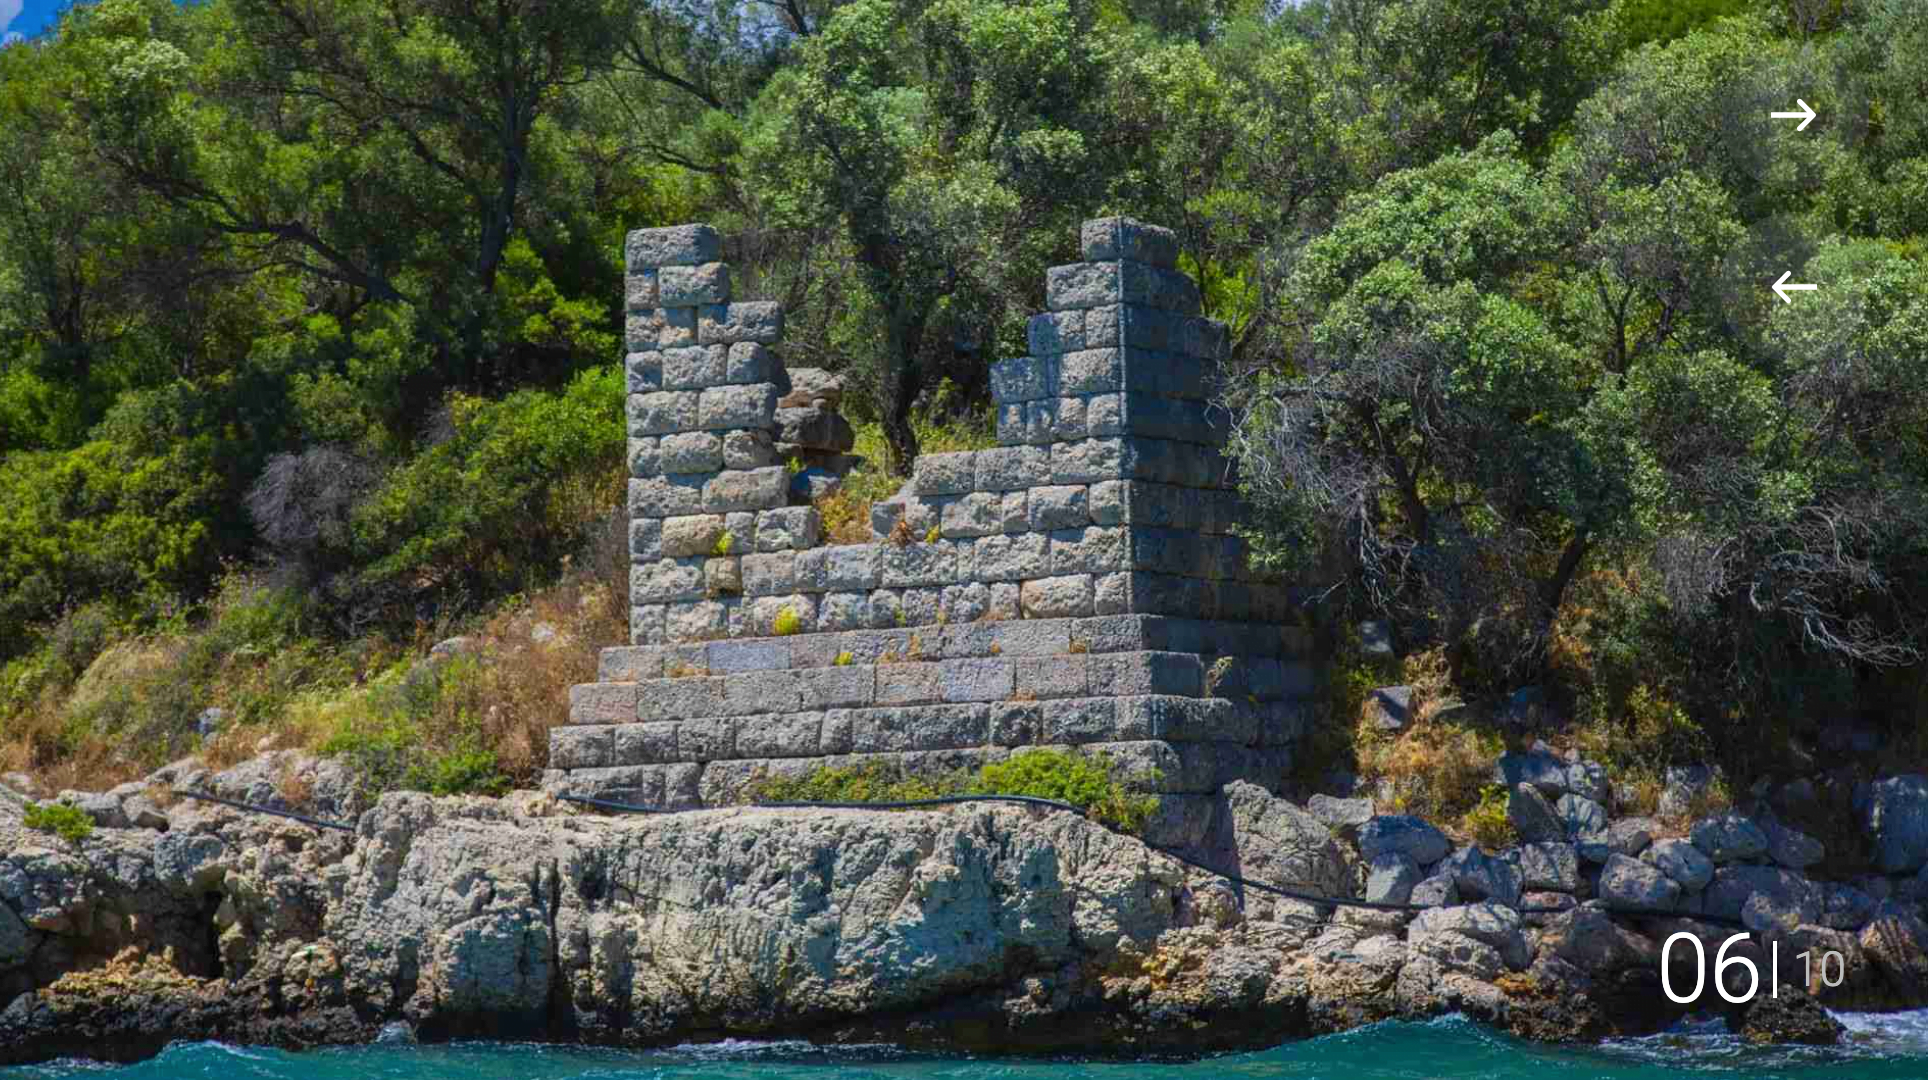 Ancient walls